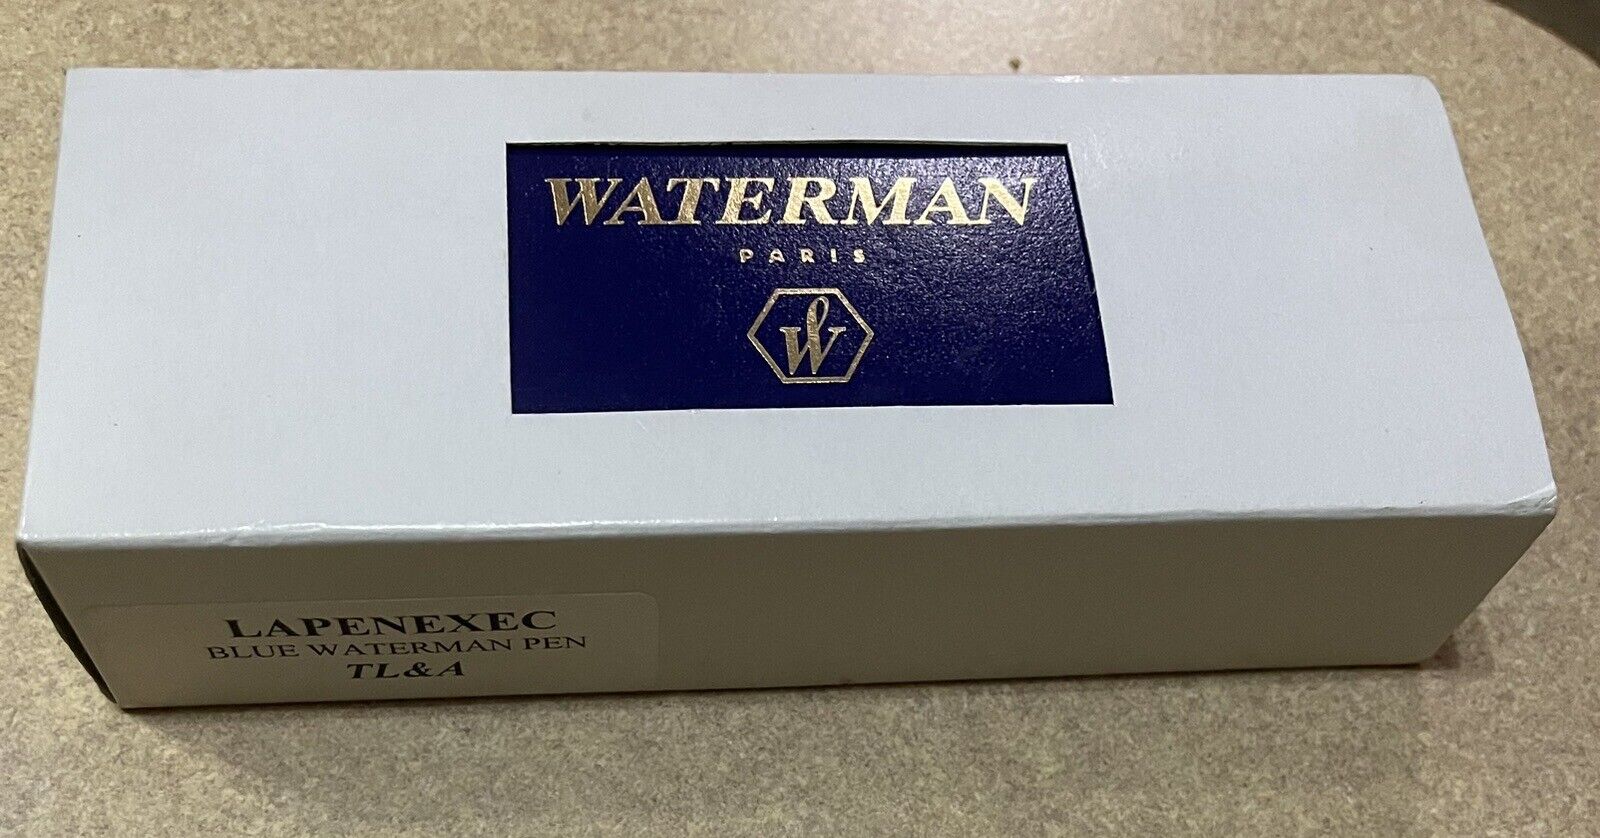 5- Waterman Paris Blue Marble Pens